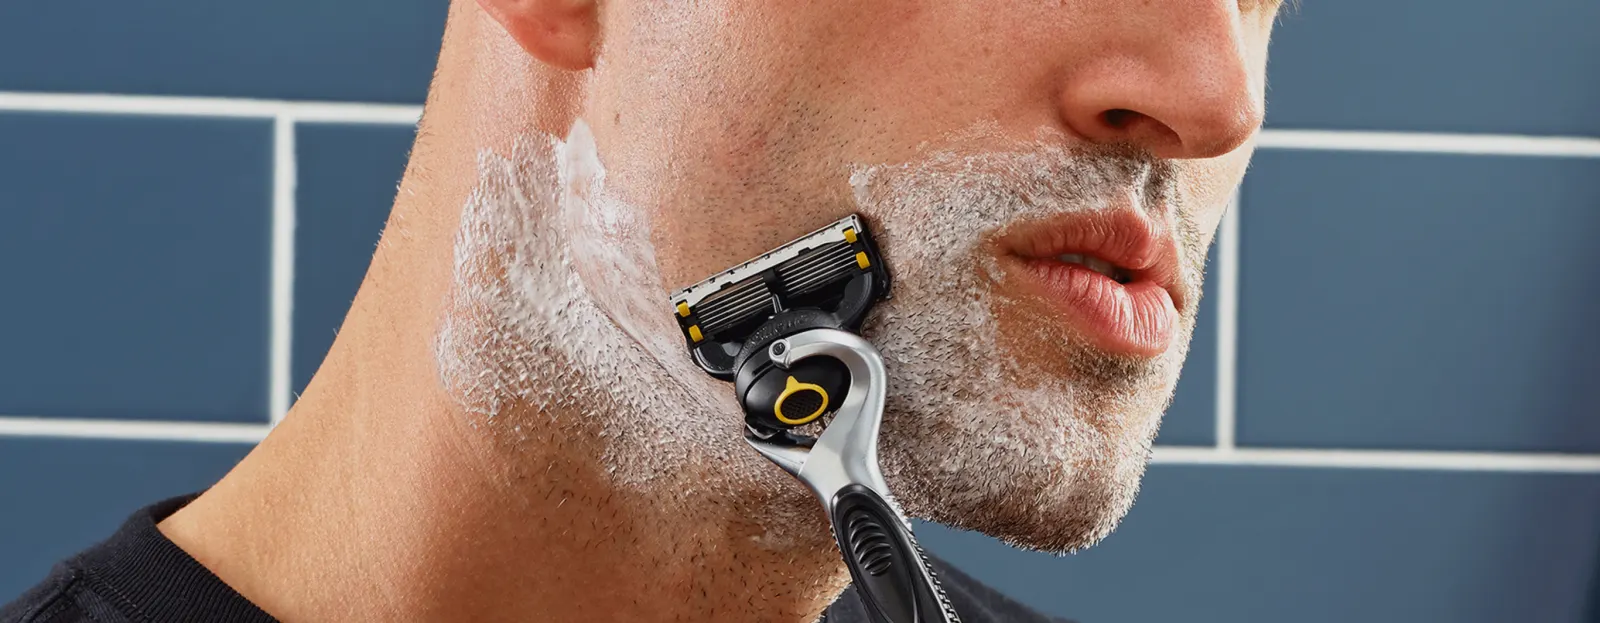 Prevenir a irritação do barbear: tudo sobre lubrificação